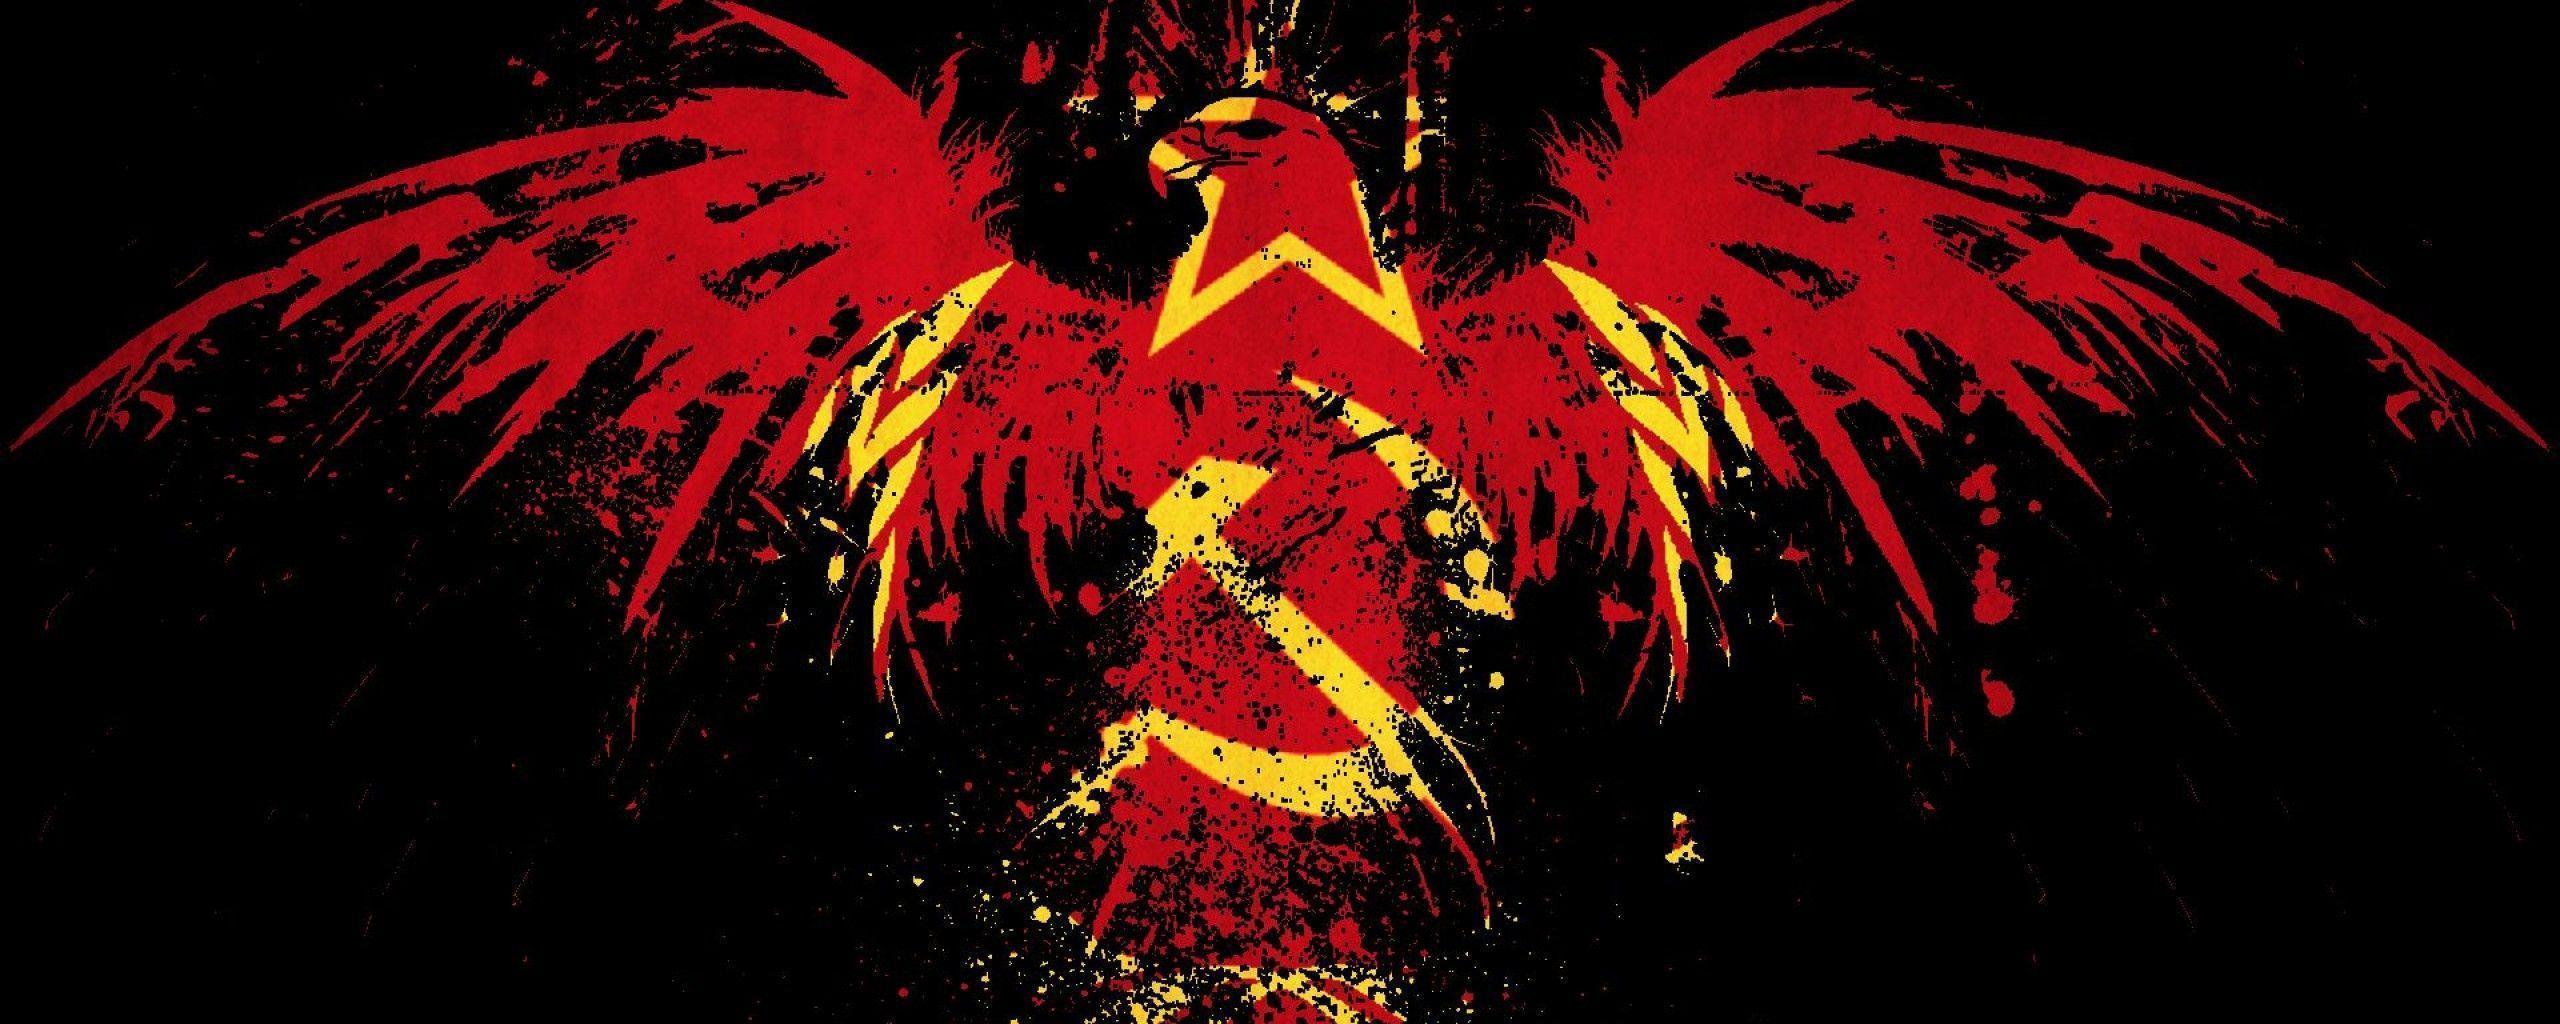 Communism CCCP USSR / Wallpaper as